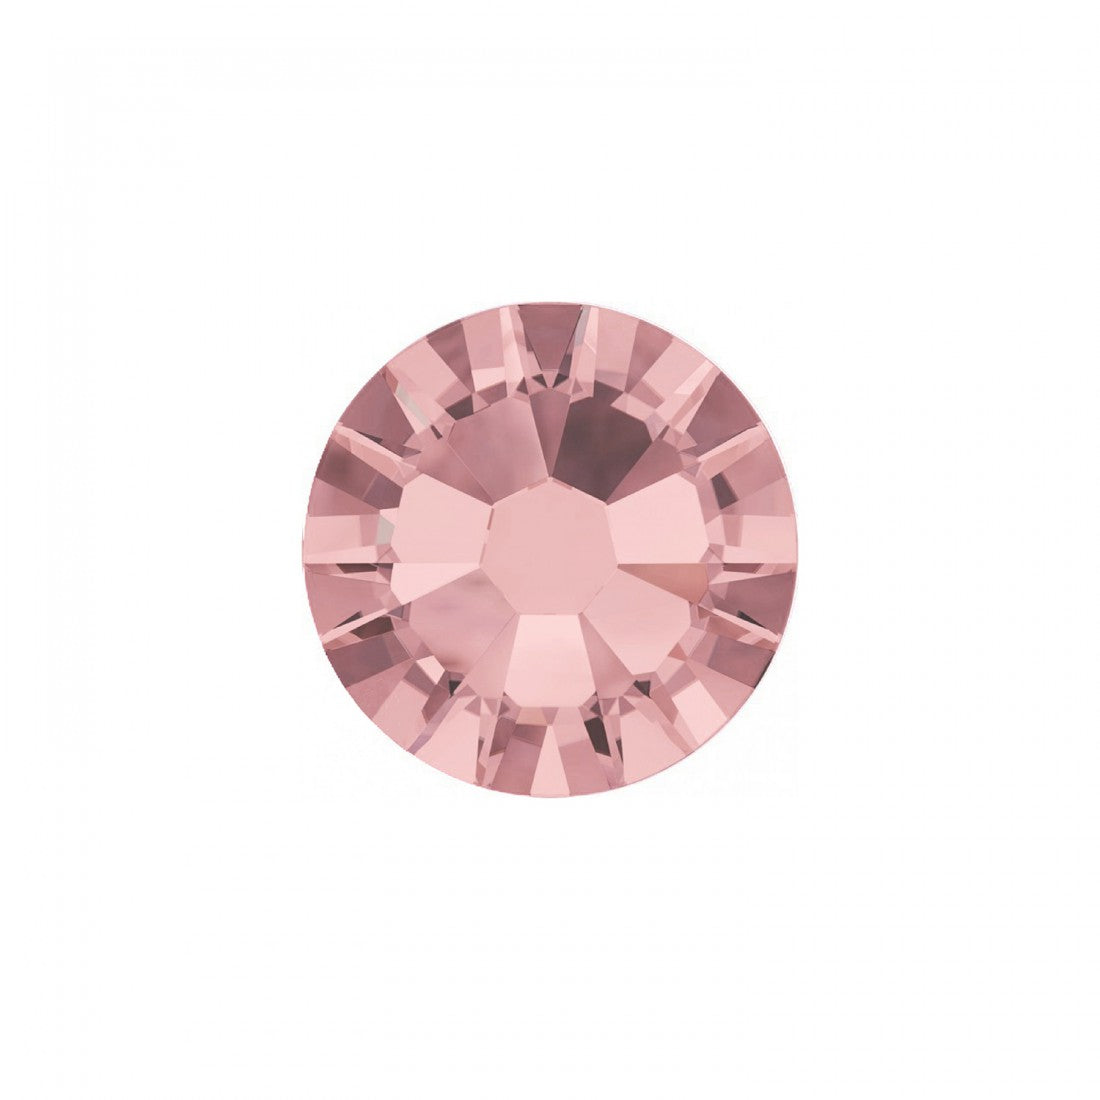 Abstract | Nailart crystal pink jade